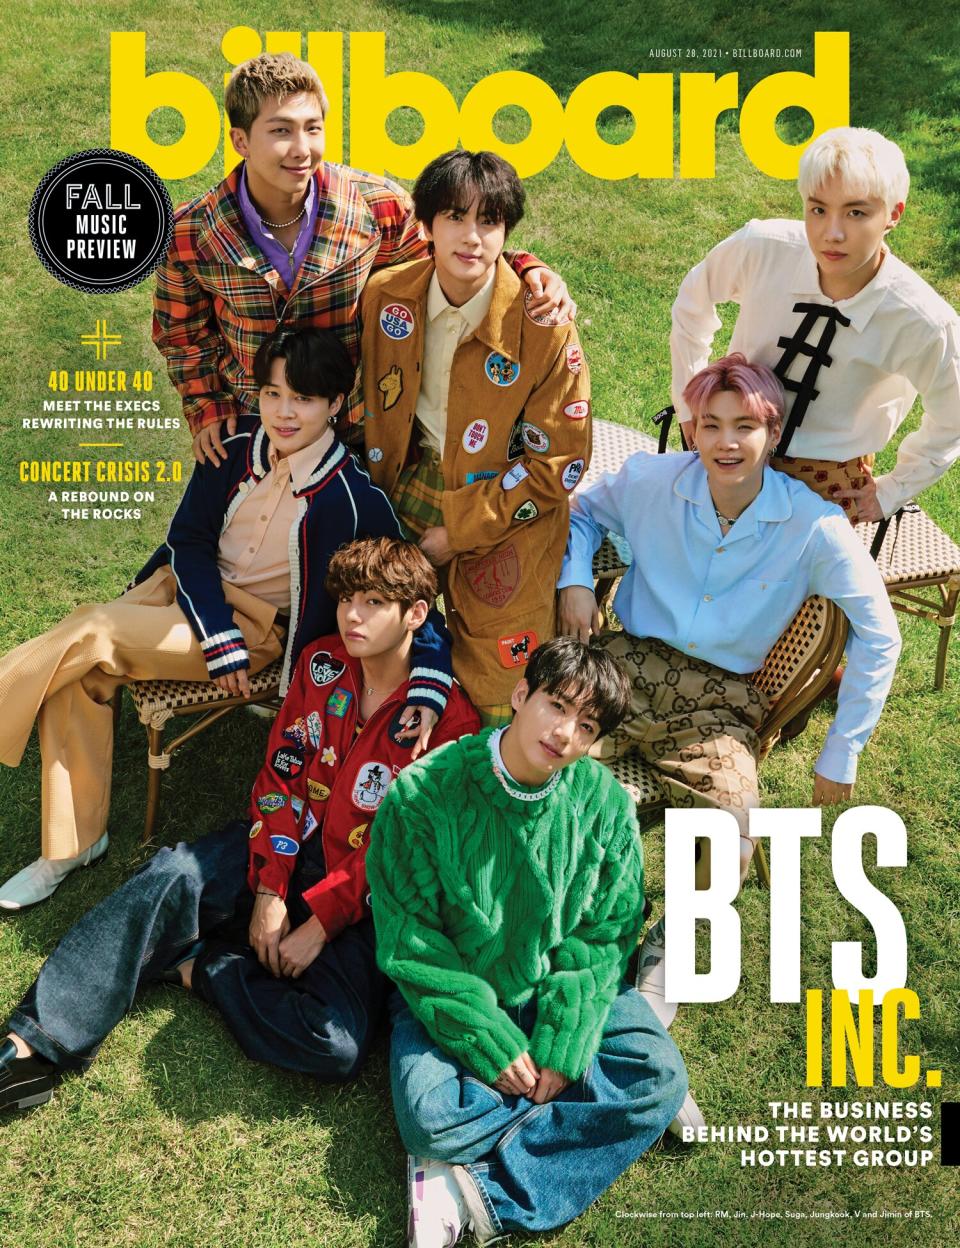 RM, Jin, J-Hope, Suga, Jungkook, V and Jimin of BTS